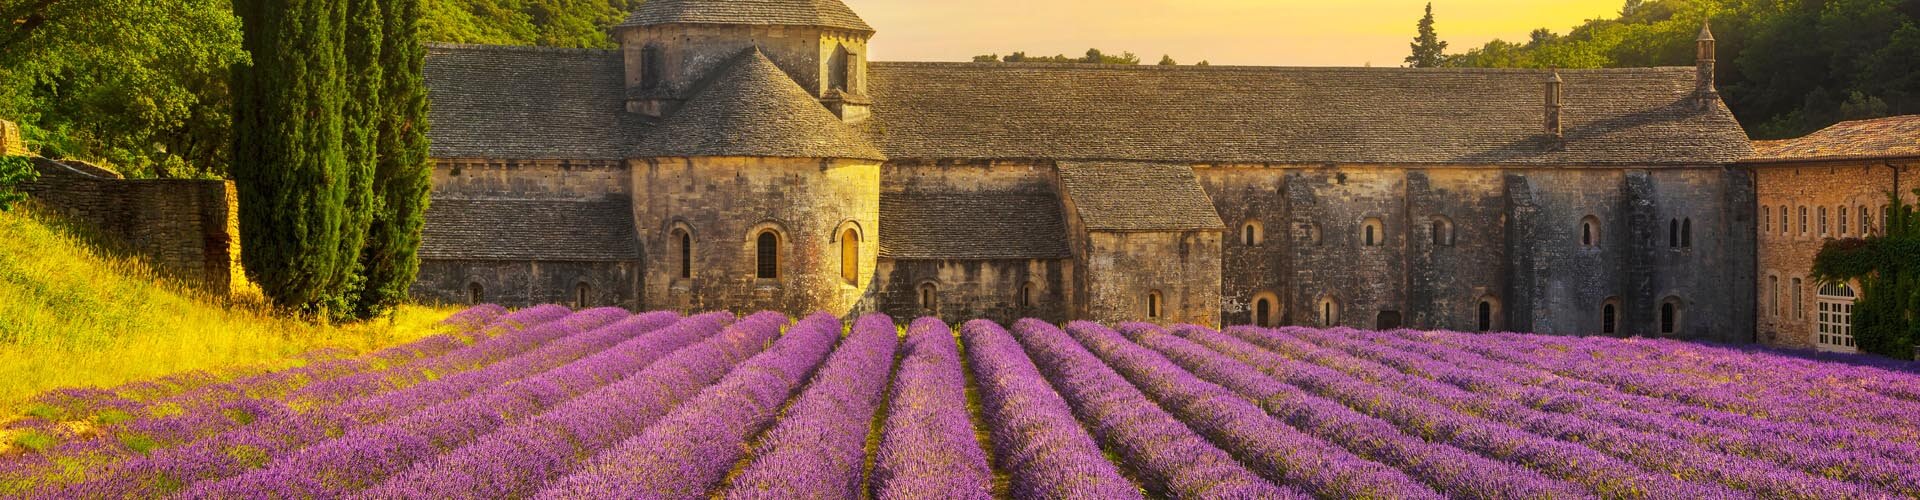 Frankreich: violettes Lavendelfeld vor einem historischen Gebäude